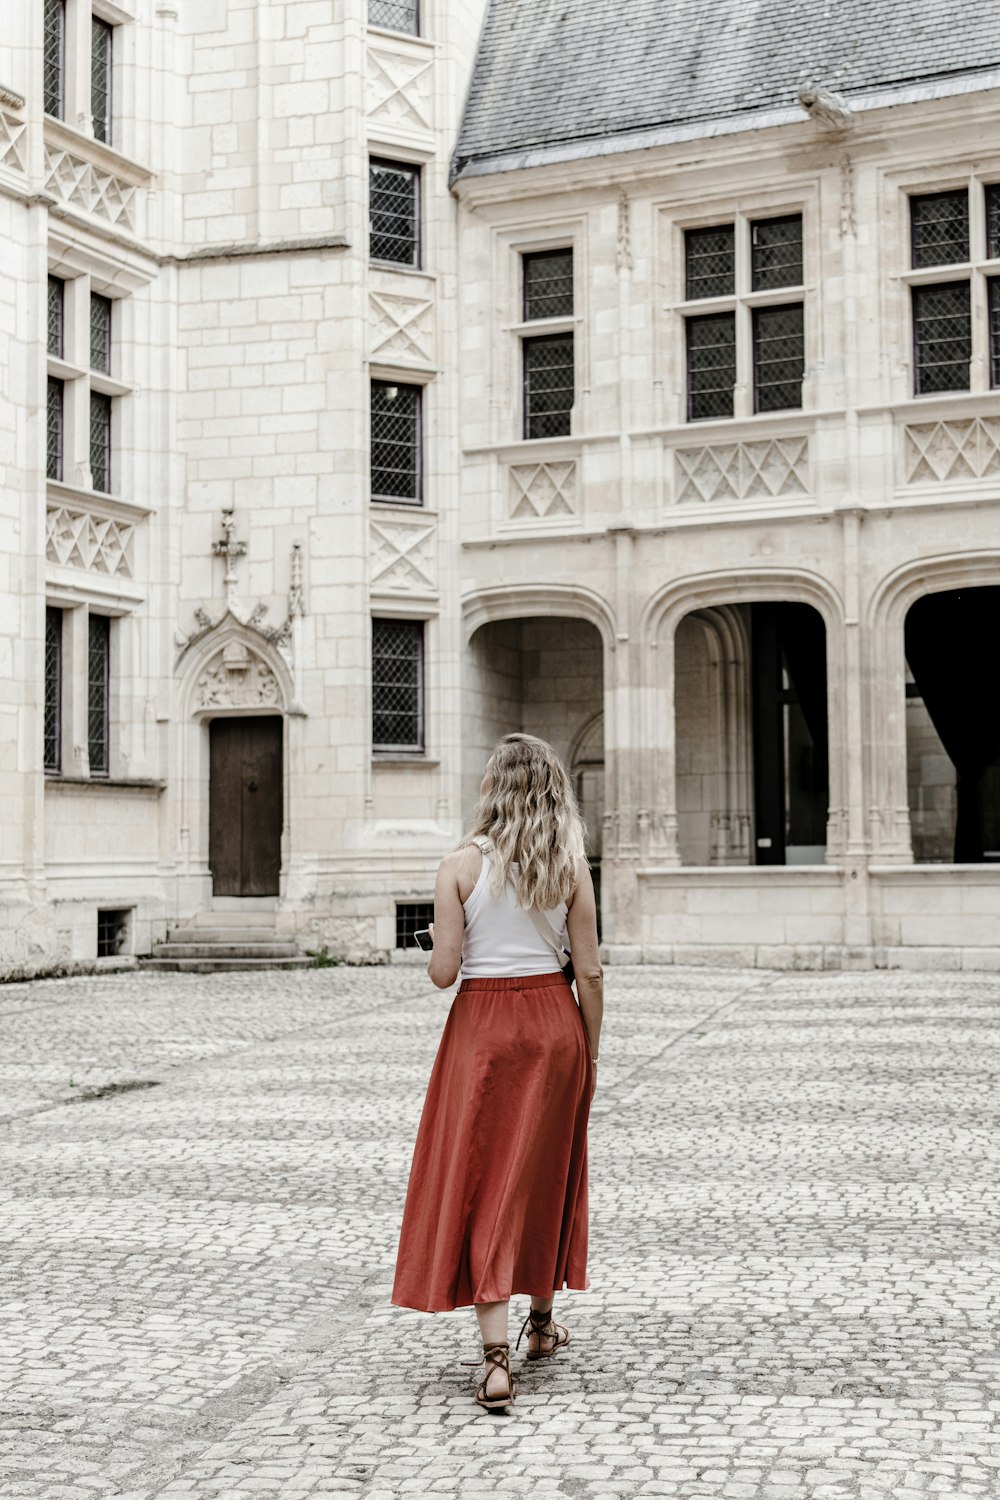 Uma mulher de saia vermelha está em frente a um grande prédio